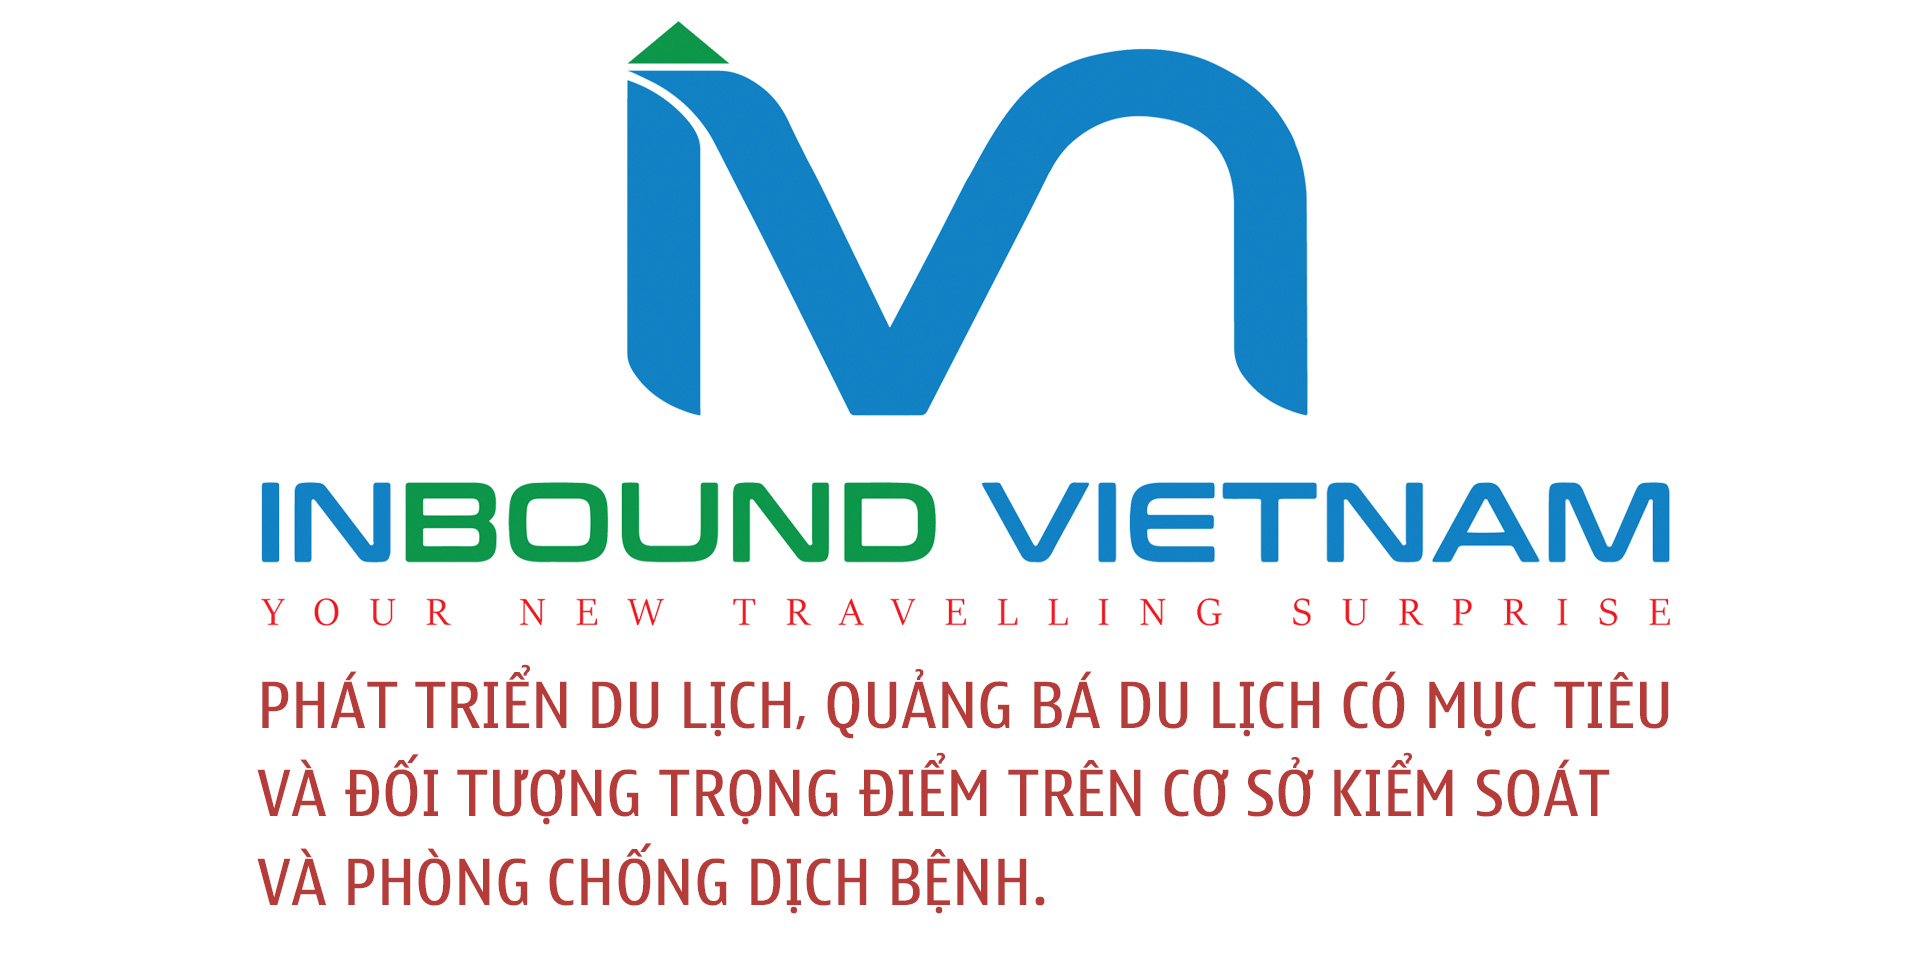 Inbound Vietnam Travel xây dựng hình ảnh một Việt Nam an toàn với tất cả du khách trên thế giới - 5